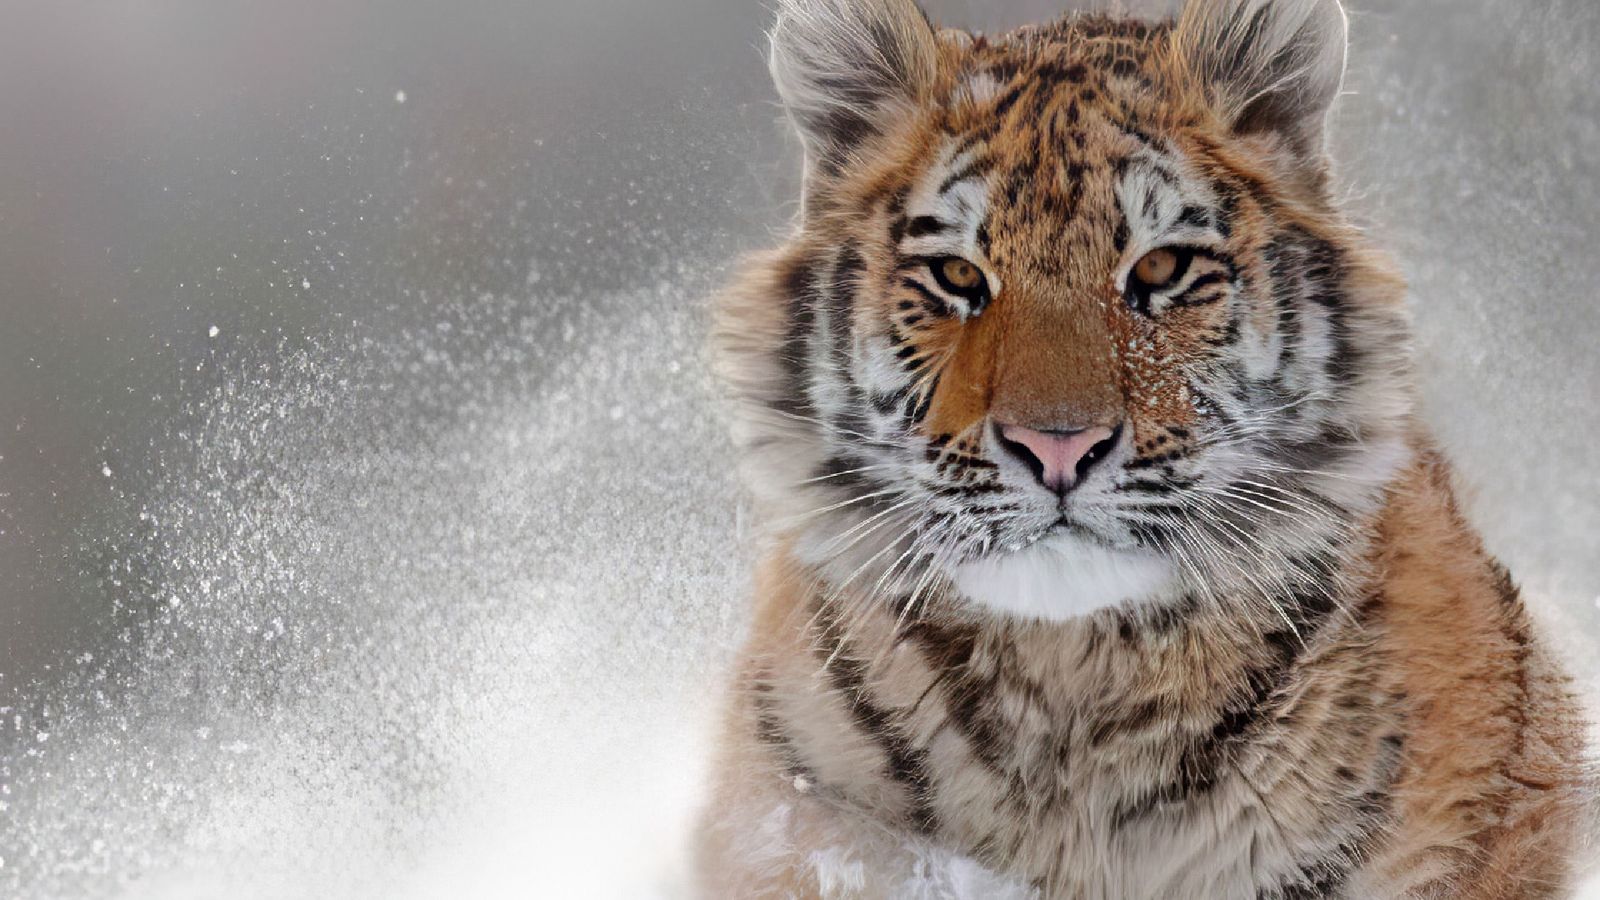 A tiger in snow - Topaz AI VRAM error